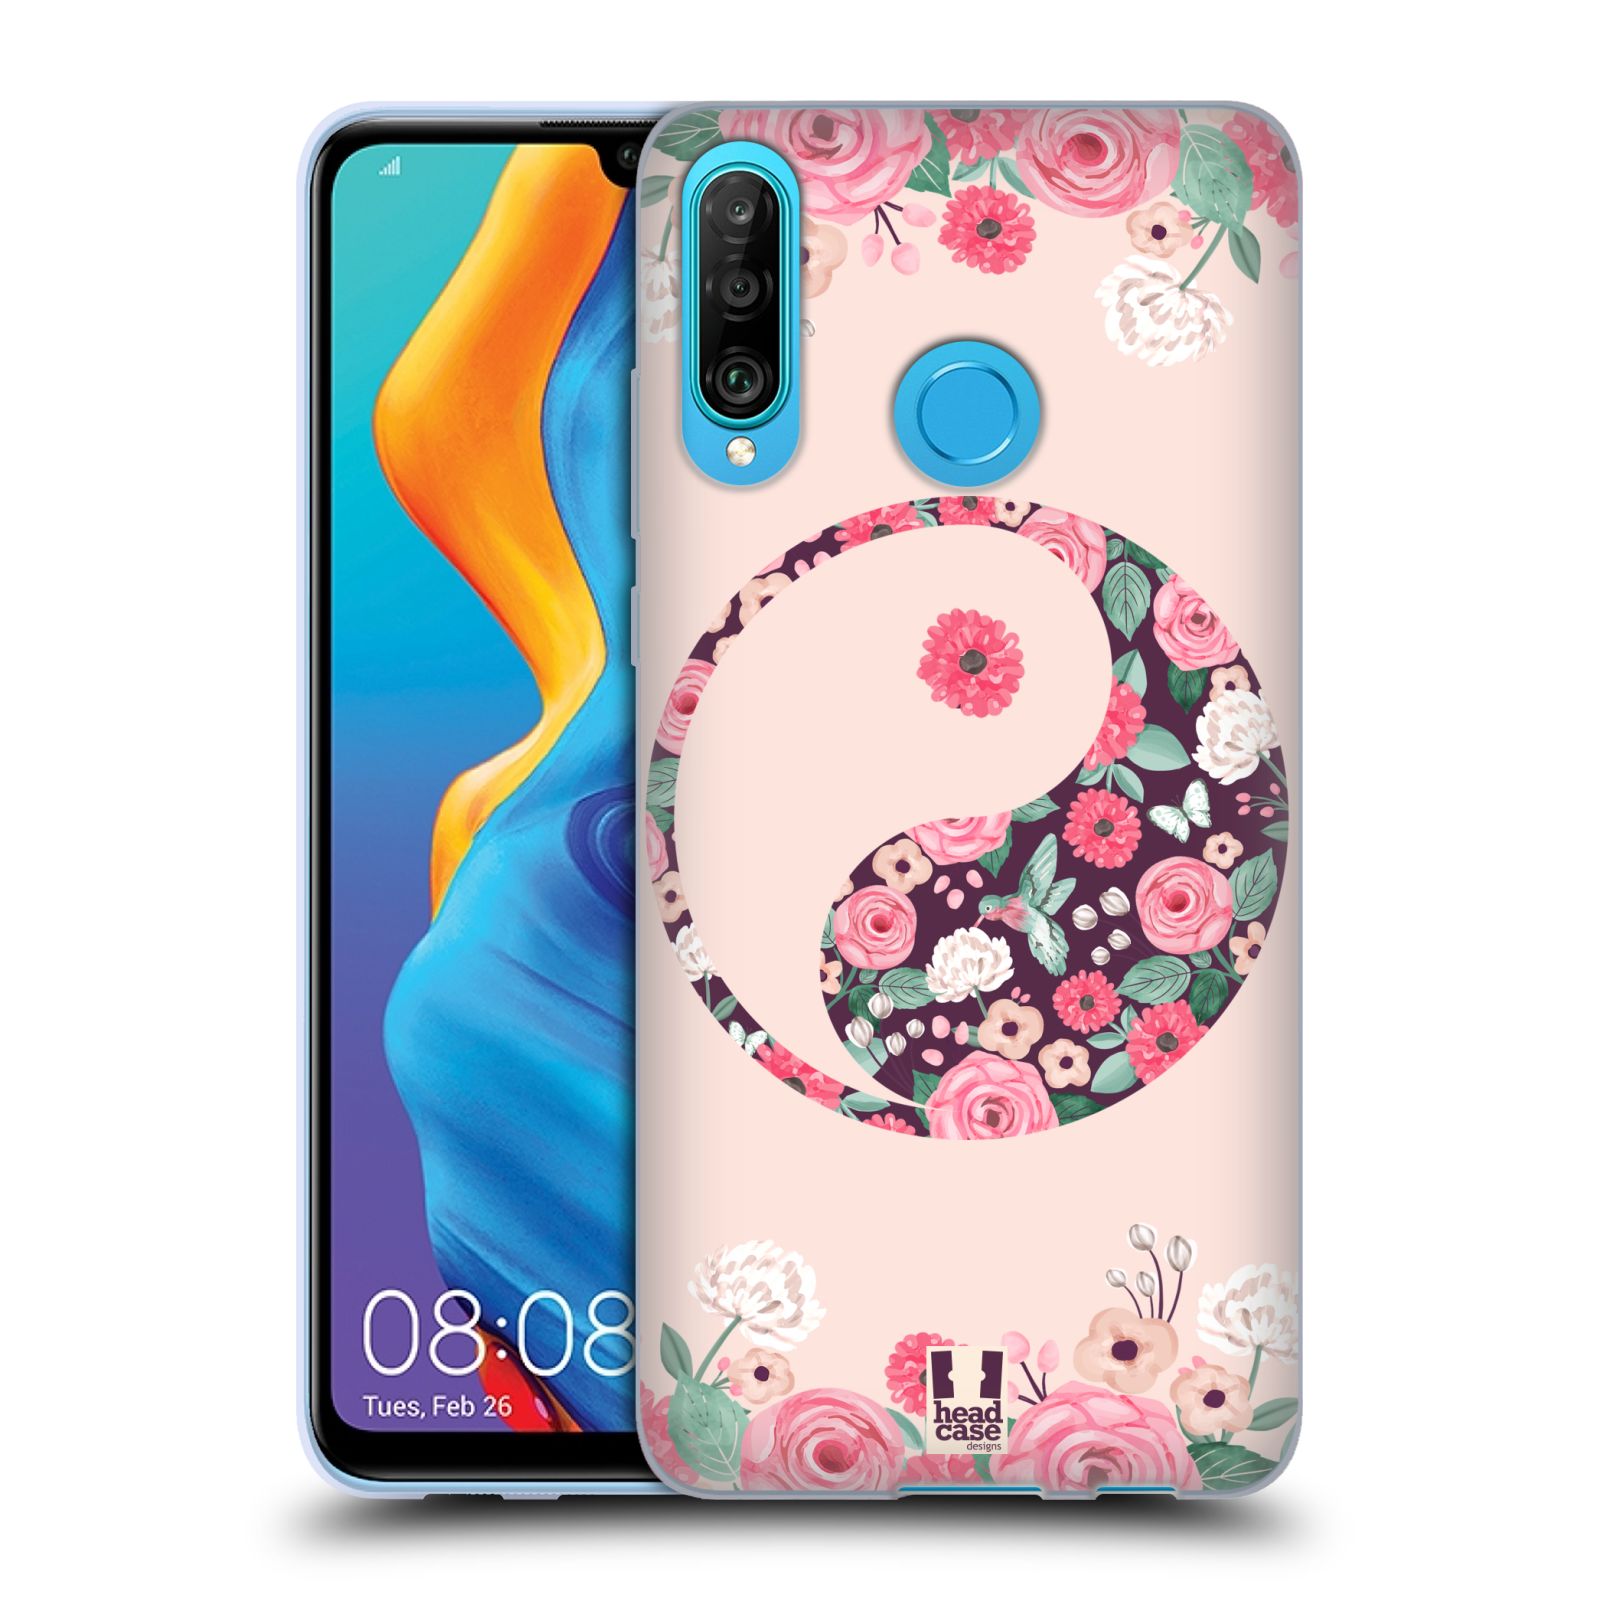 Silikonové pouzdro na mobil Huawei P30 Lite - Head Case - Yin a Yang Floral (Silikonový kryt, obal, pouzdro na mobilní telefon Huawei P30 Lite Dual Sim (MAR-L01A, MAR-L21A, MAR-LX1A) s motivem Yin a Yang Floral)